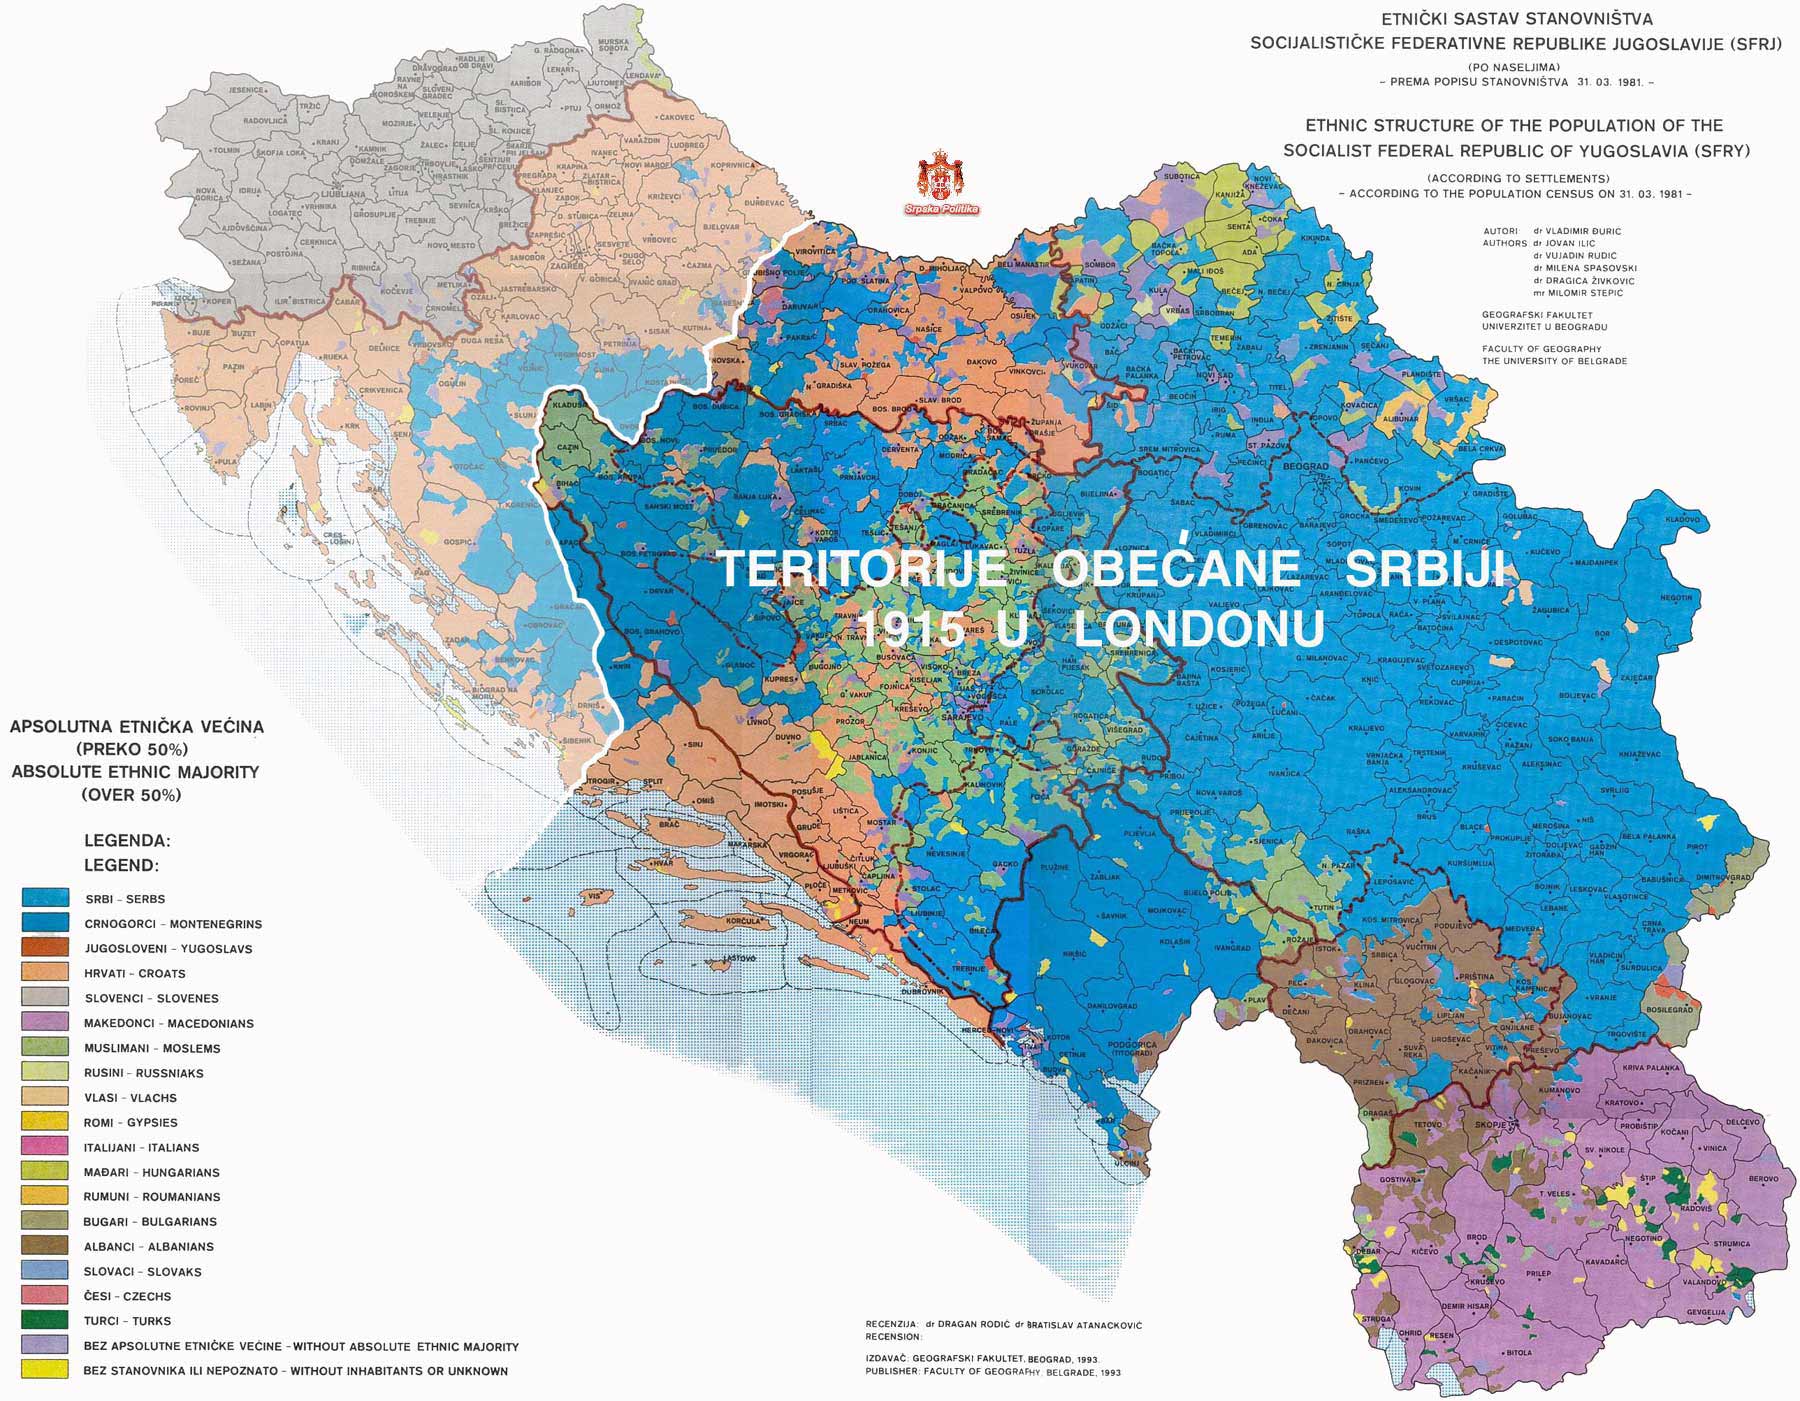 Srbske, Slovenačke i Italijanske teritorije u Hrvatskoj otvoreno pitanje